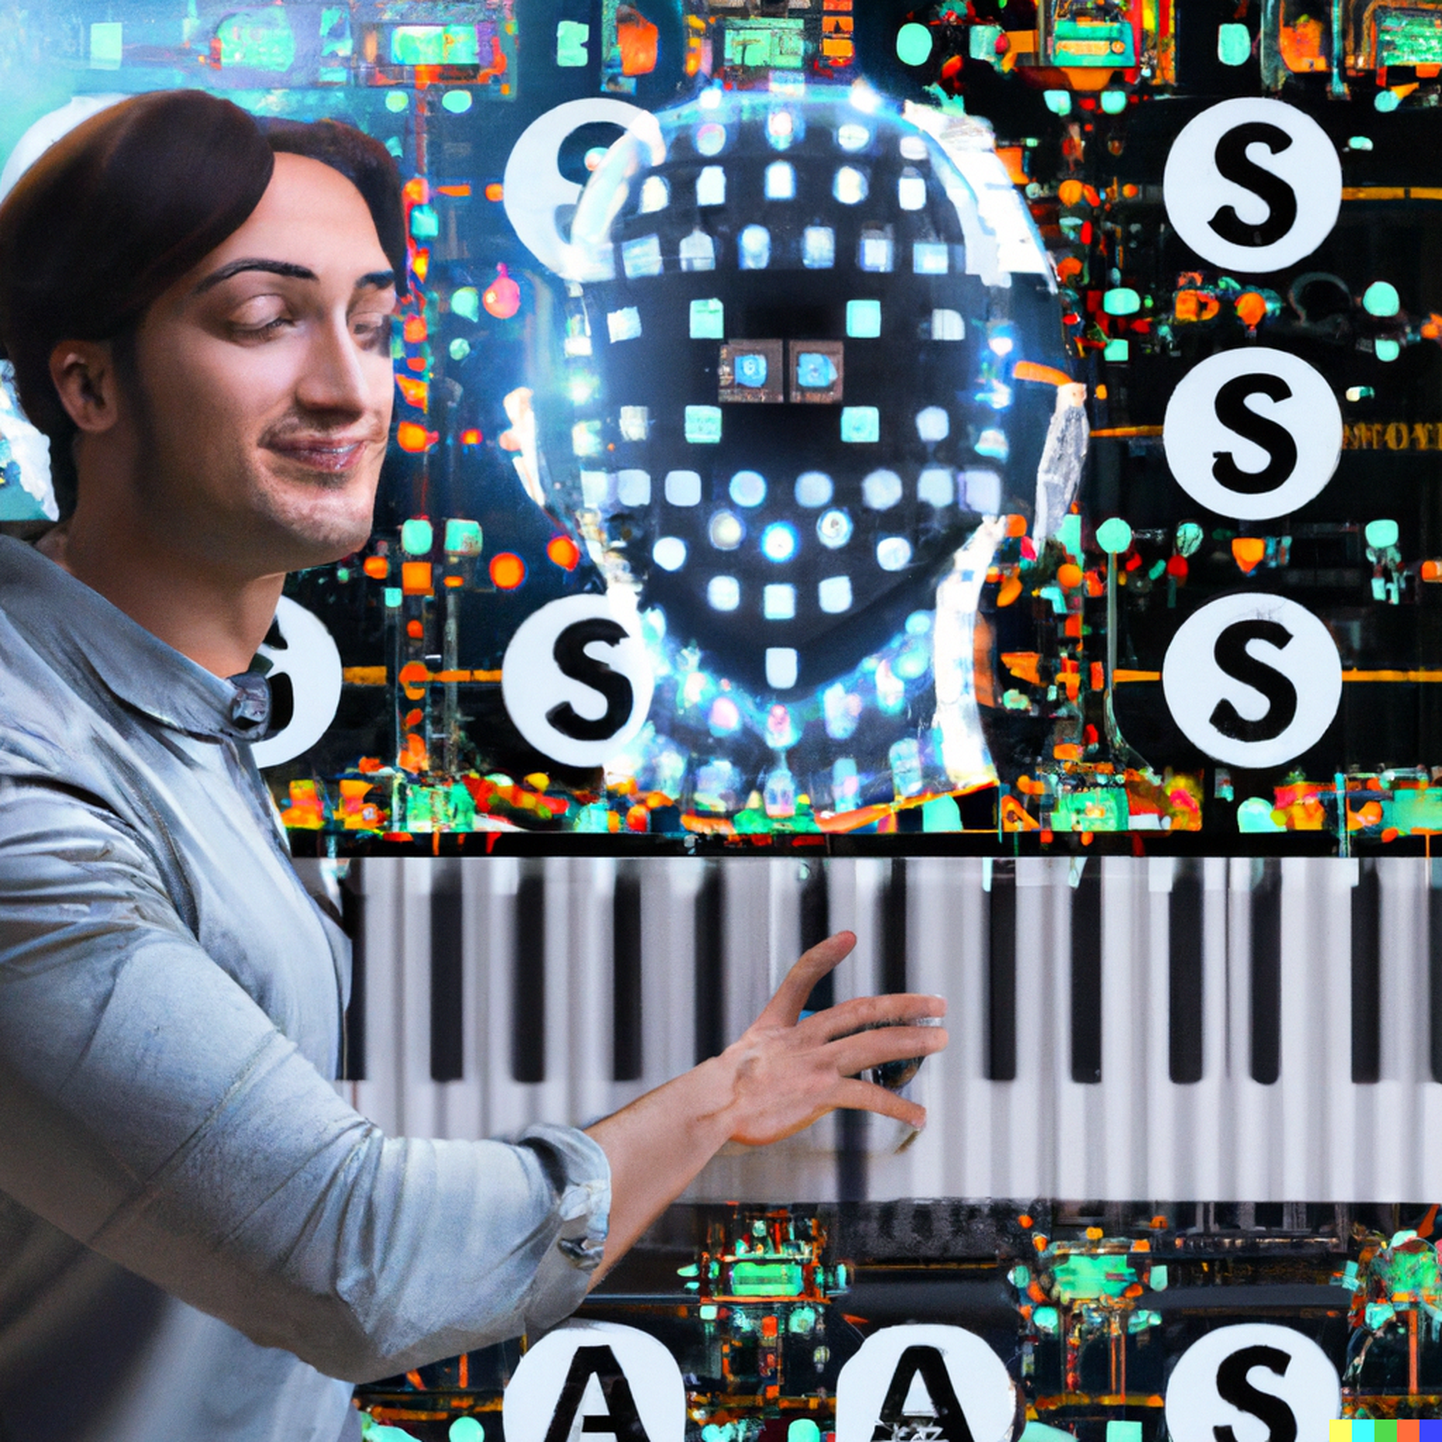 Veidravõitu muusikale, mille lõi masin, tuli ka kentsakas illustratsioon, mille tekitas tehisiintellekt Dall-E selle loo põhjal. Pildil on kujutatud tehisintellekt, mis komponeerib muusikat.